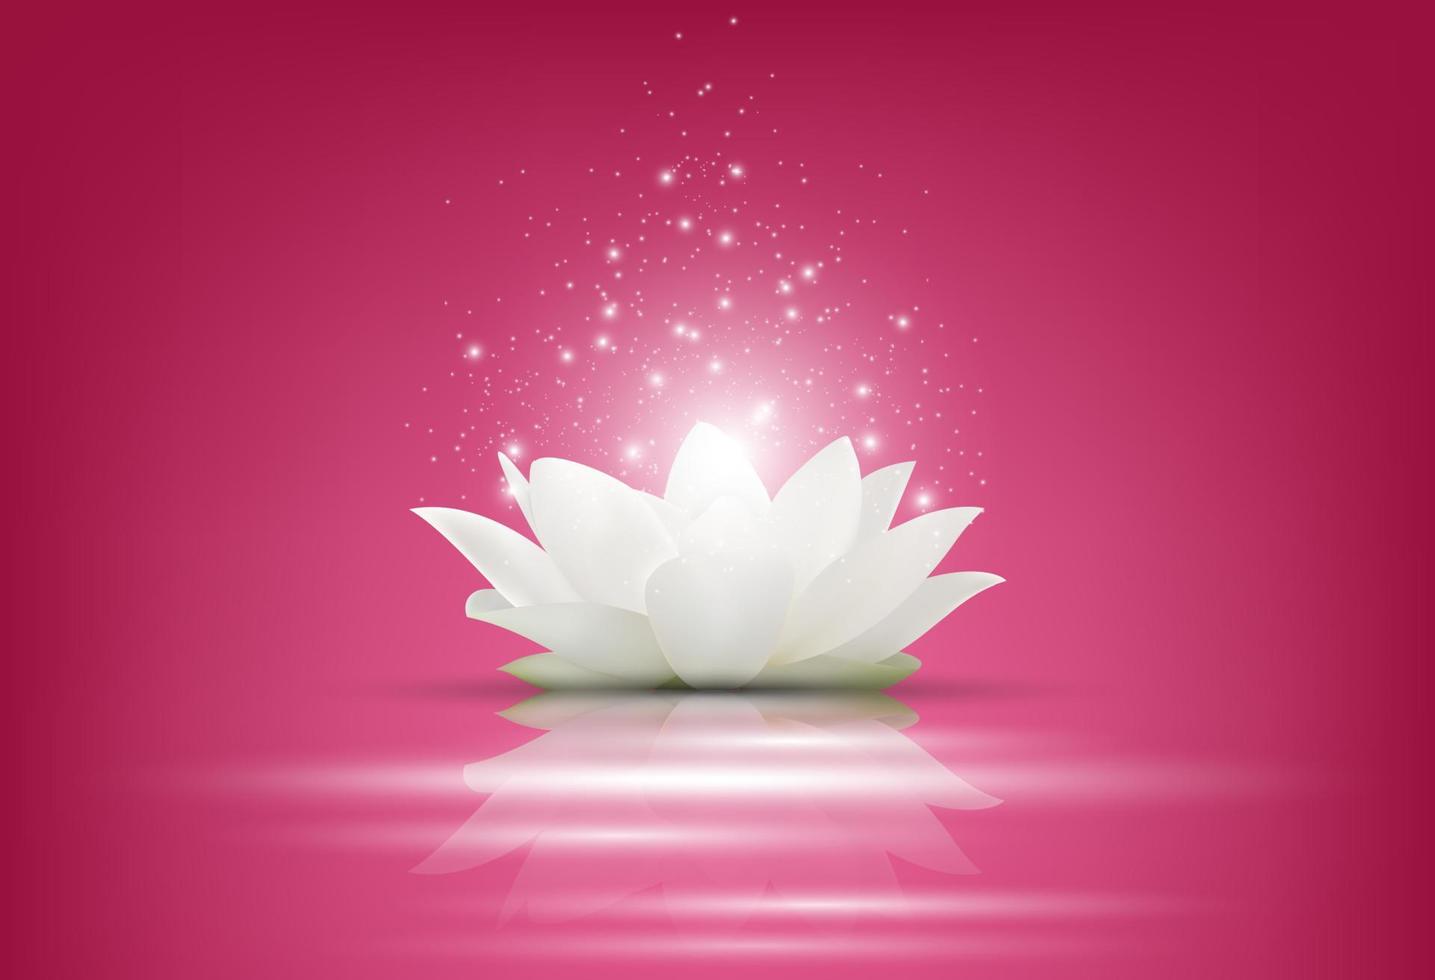 flor de loto blanco mágico sobre fondo rosa.vector vector